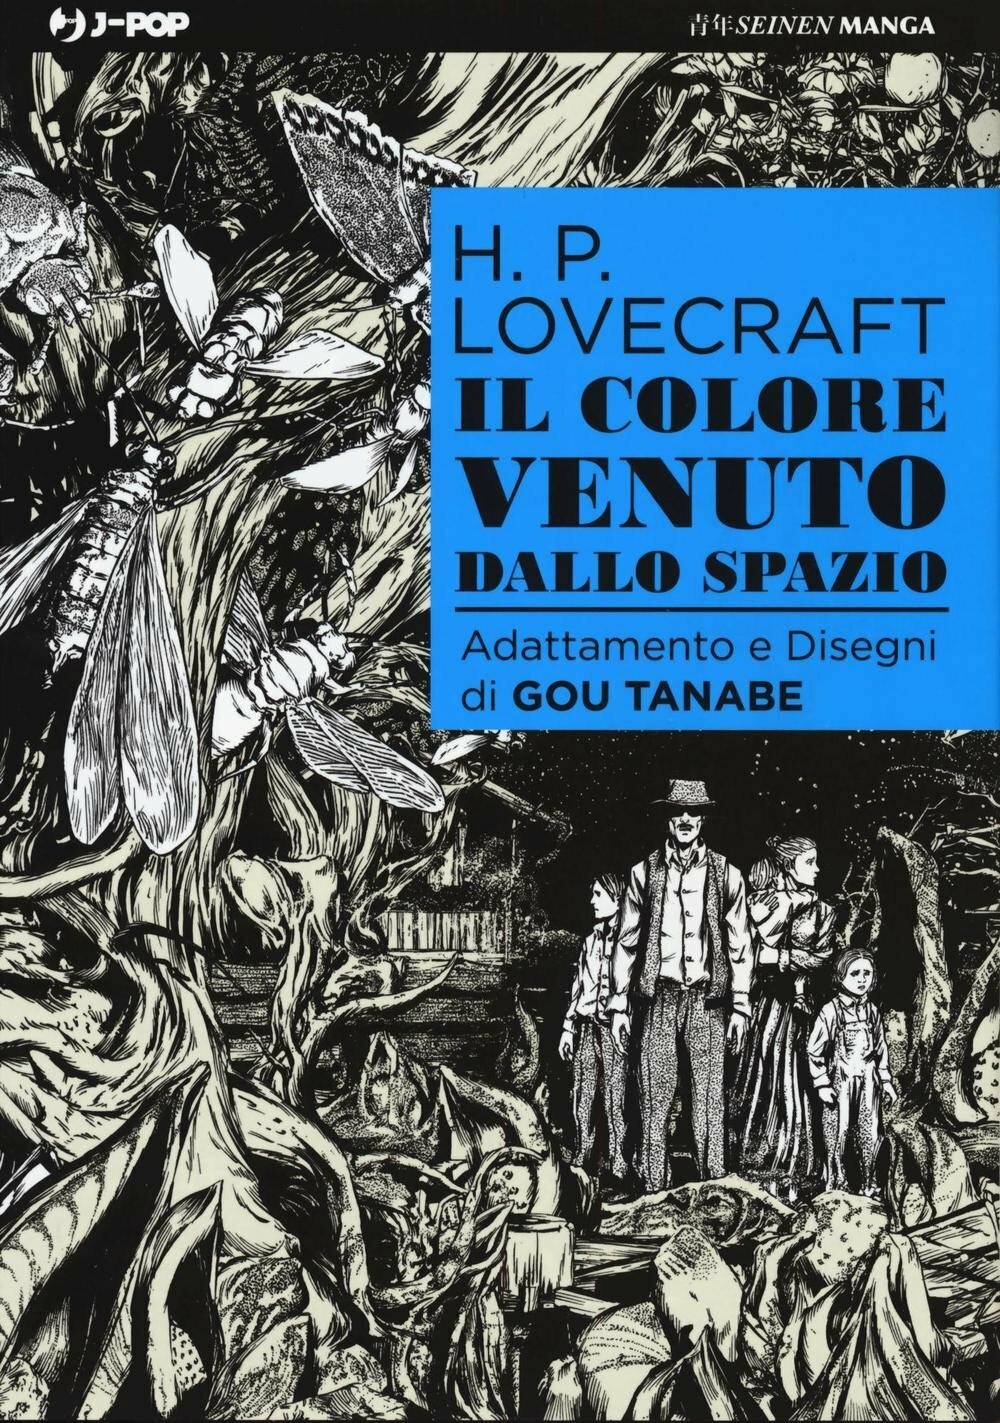 La cover in bianco e nero dove è disegnata la famiglia protagonista del racconto Il colore venuto dallo spazio